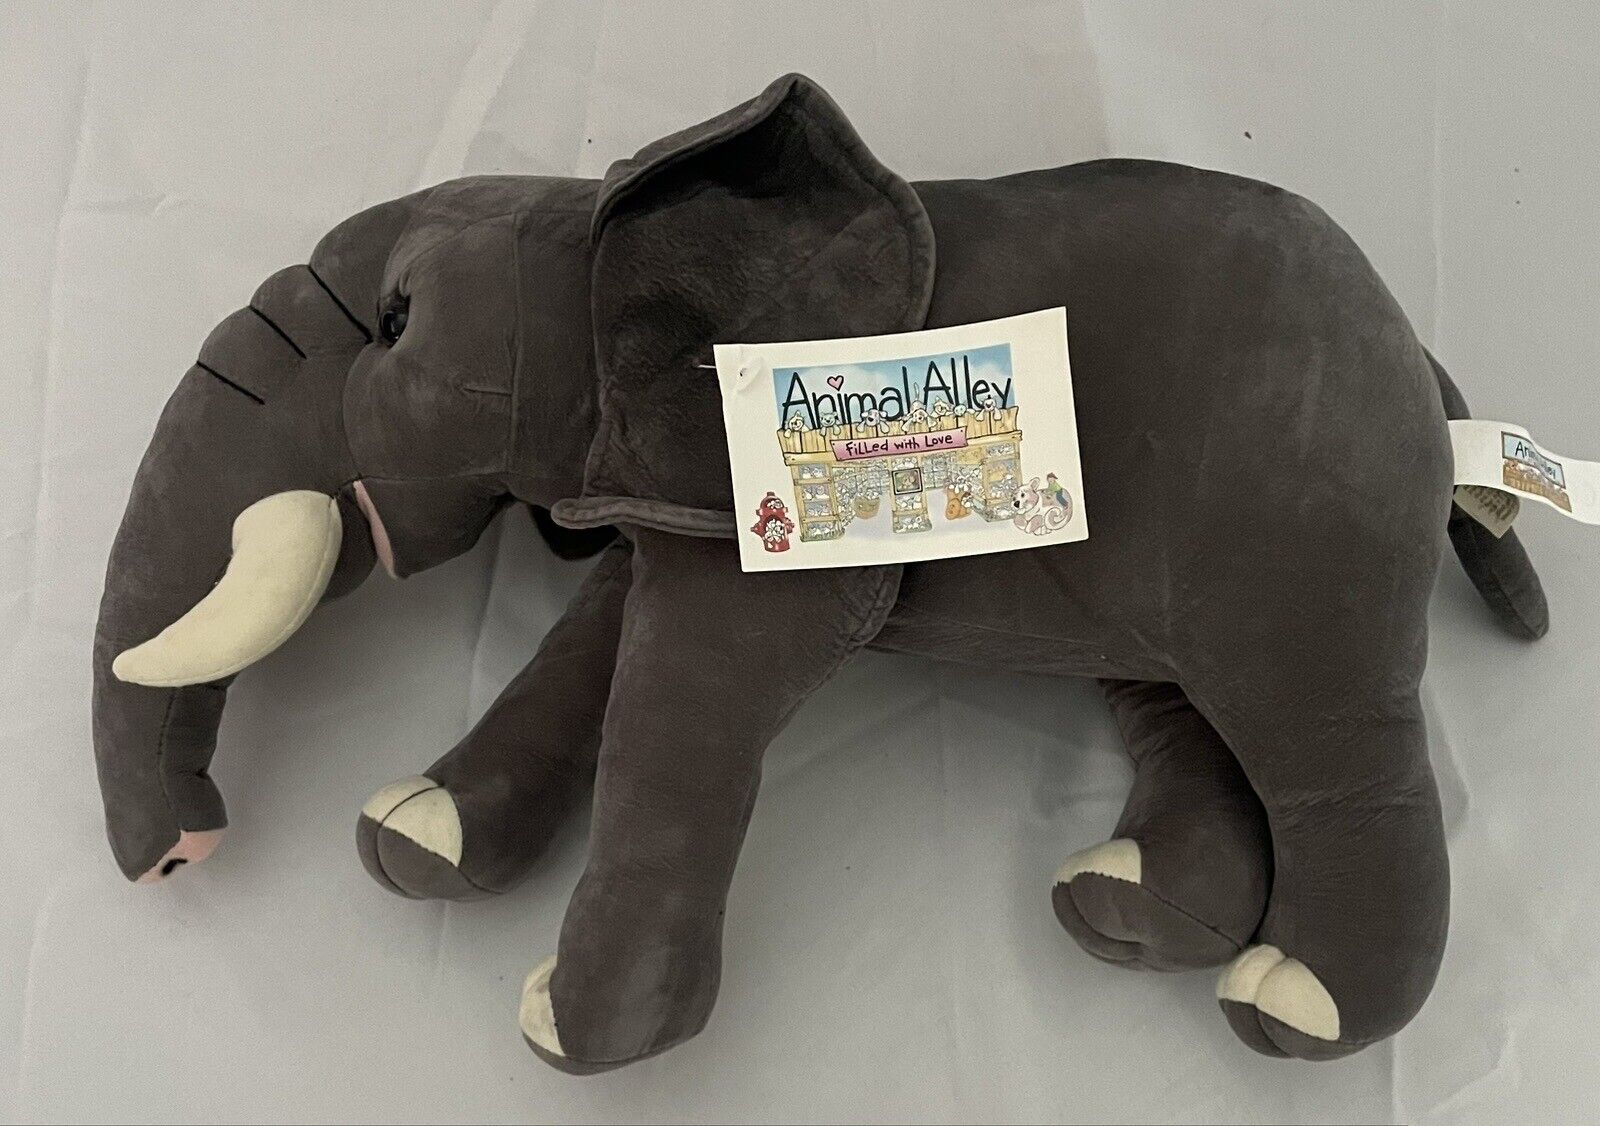 Anna Club Elephant Plush Vintage 2000 Animal Alley Toys R Us Stuffed Tusks NOS Animal Alley - фотография #5